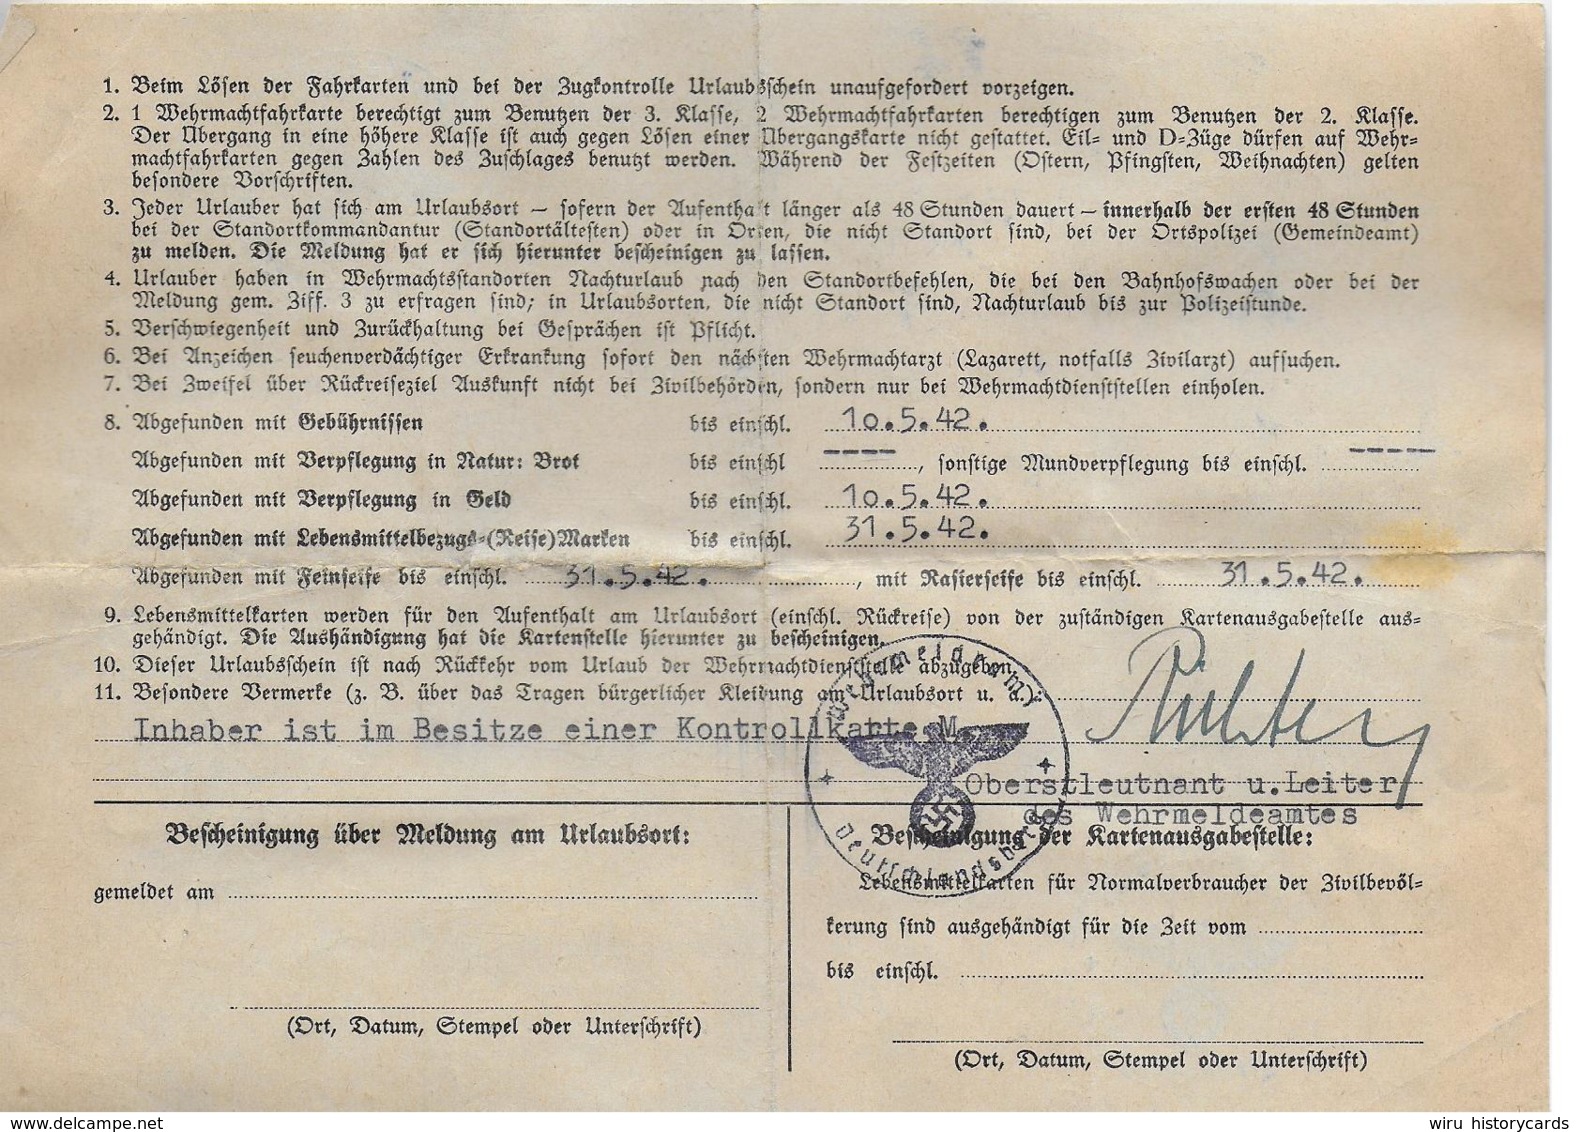 AK 0130  Graz-Köflacher Eisenbahn - Wehrmachtfahrkarten Mit Kriegsurlauberschein Juni 1942 - Europa